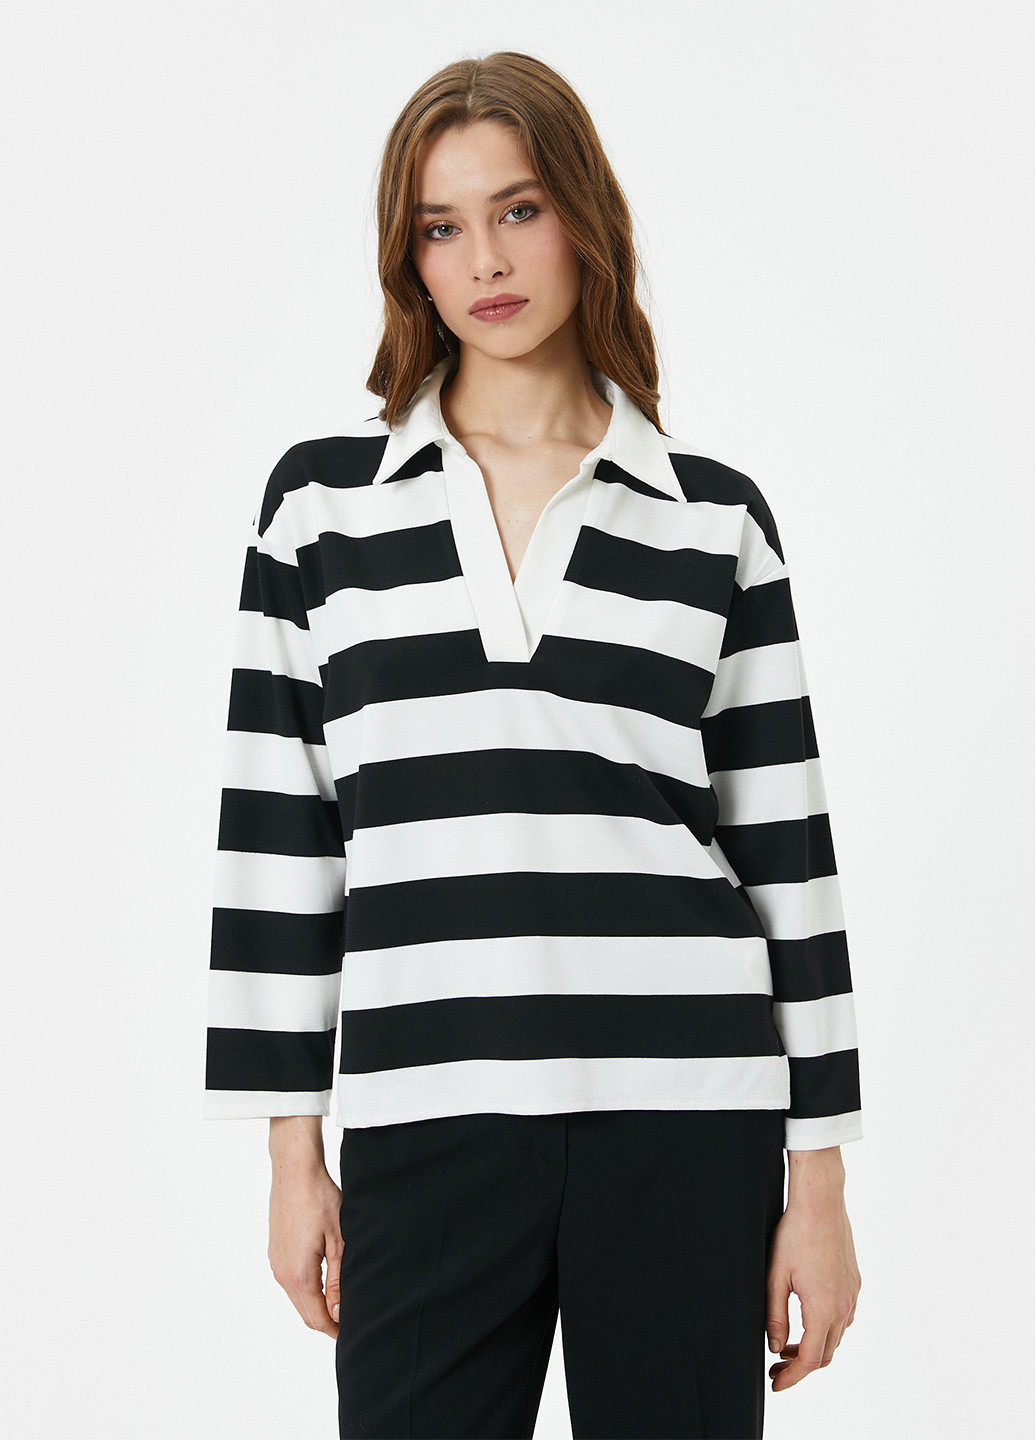 Черно-белая женская футболка-поло KOTON в полоску